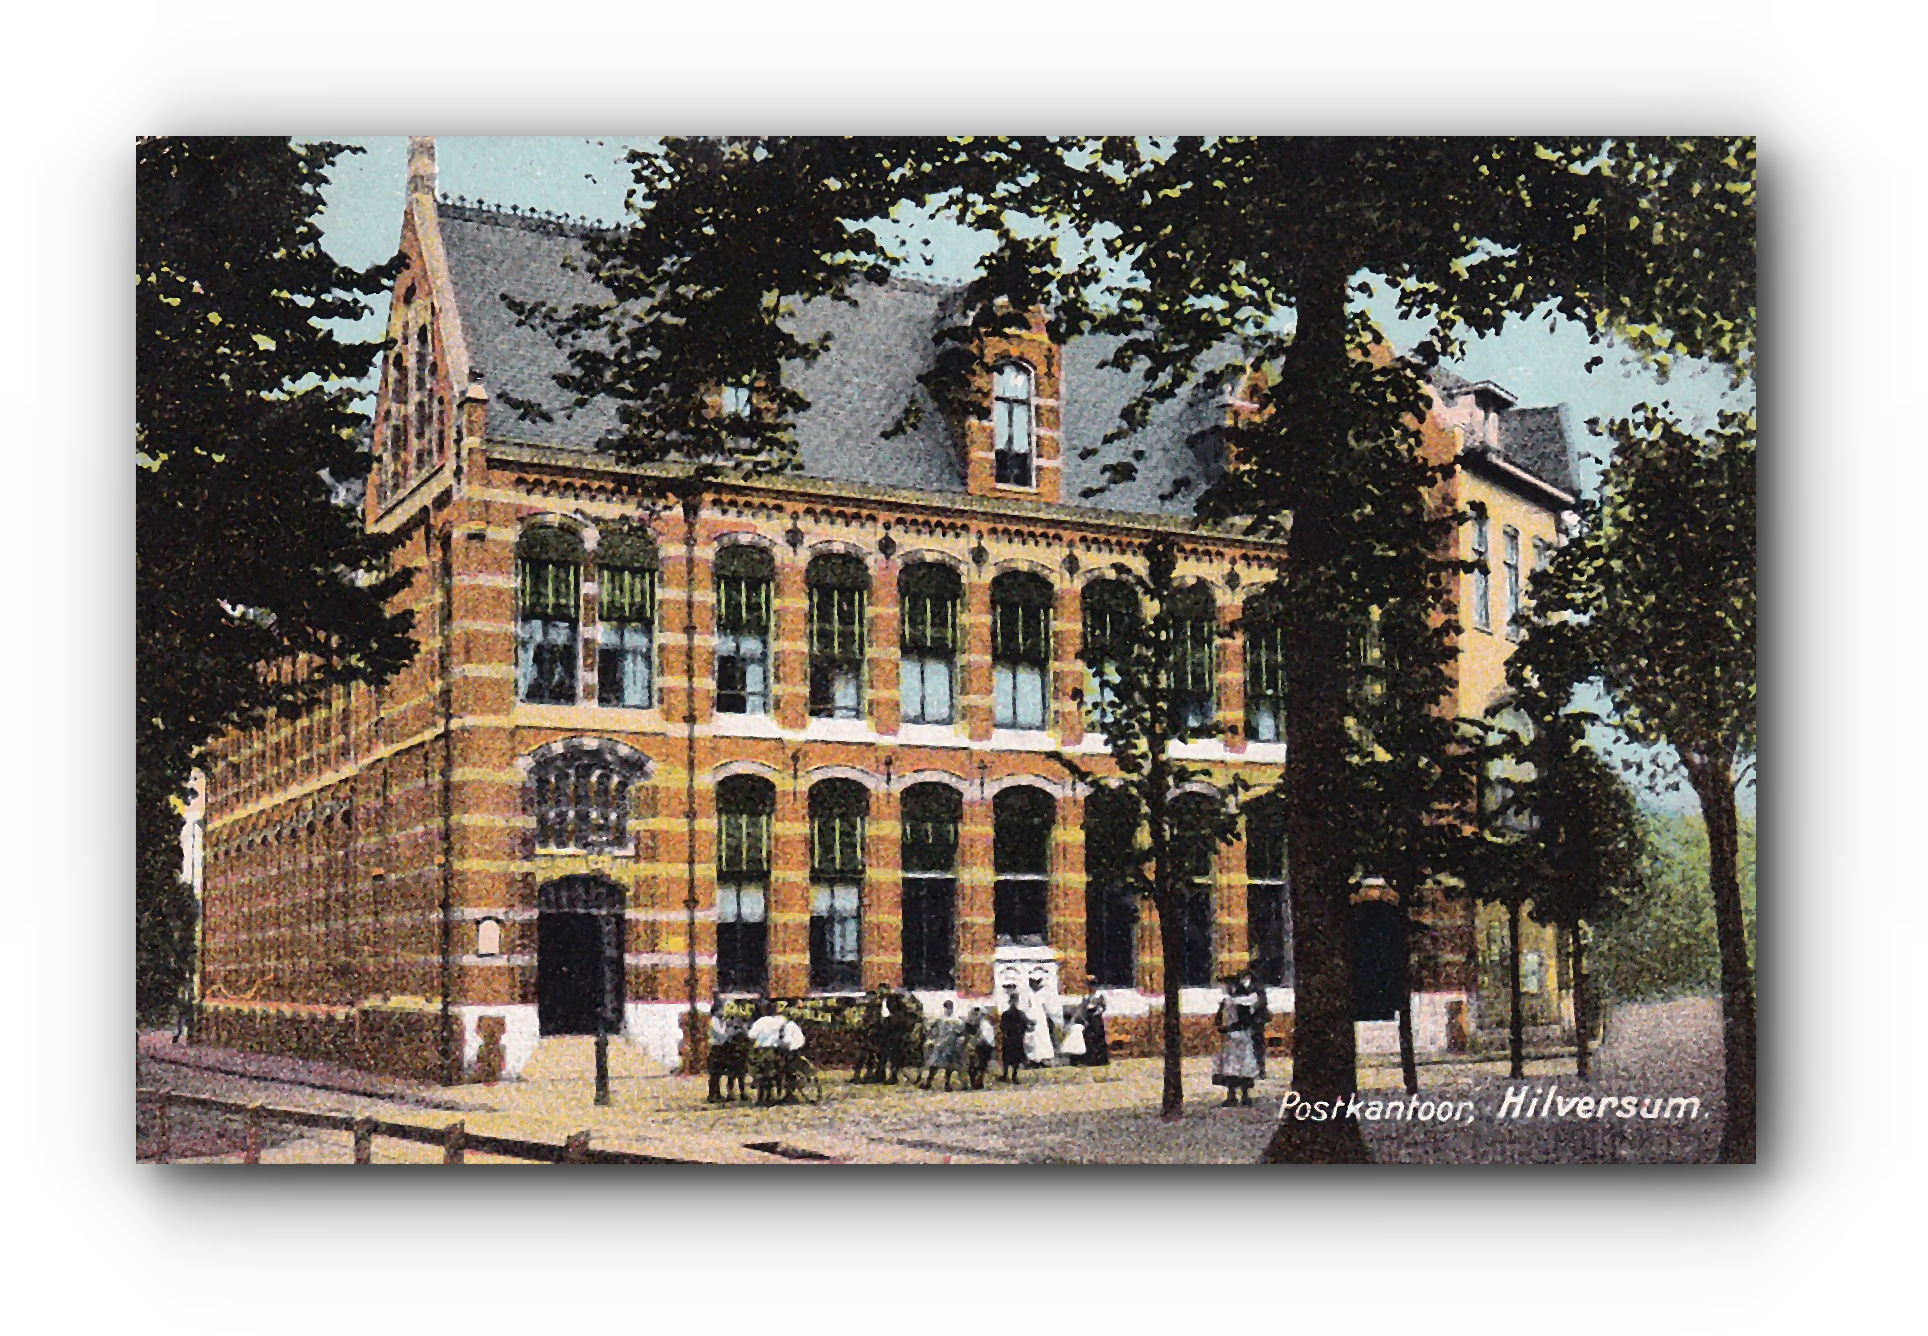 - Postkantoor - HILVERSUM - 17.10.1908 -